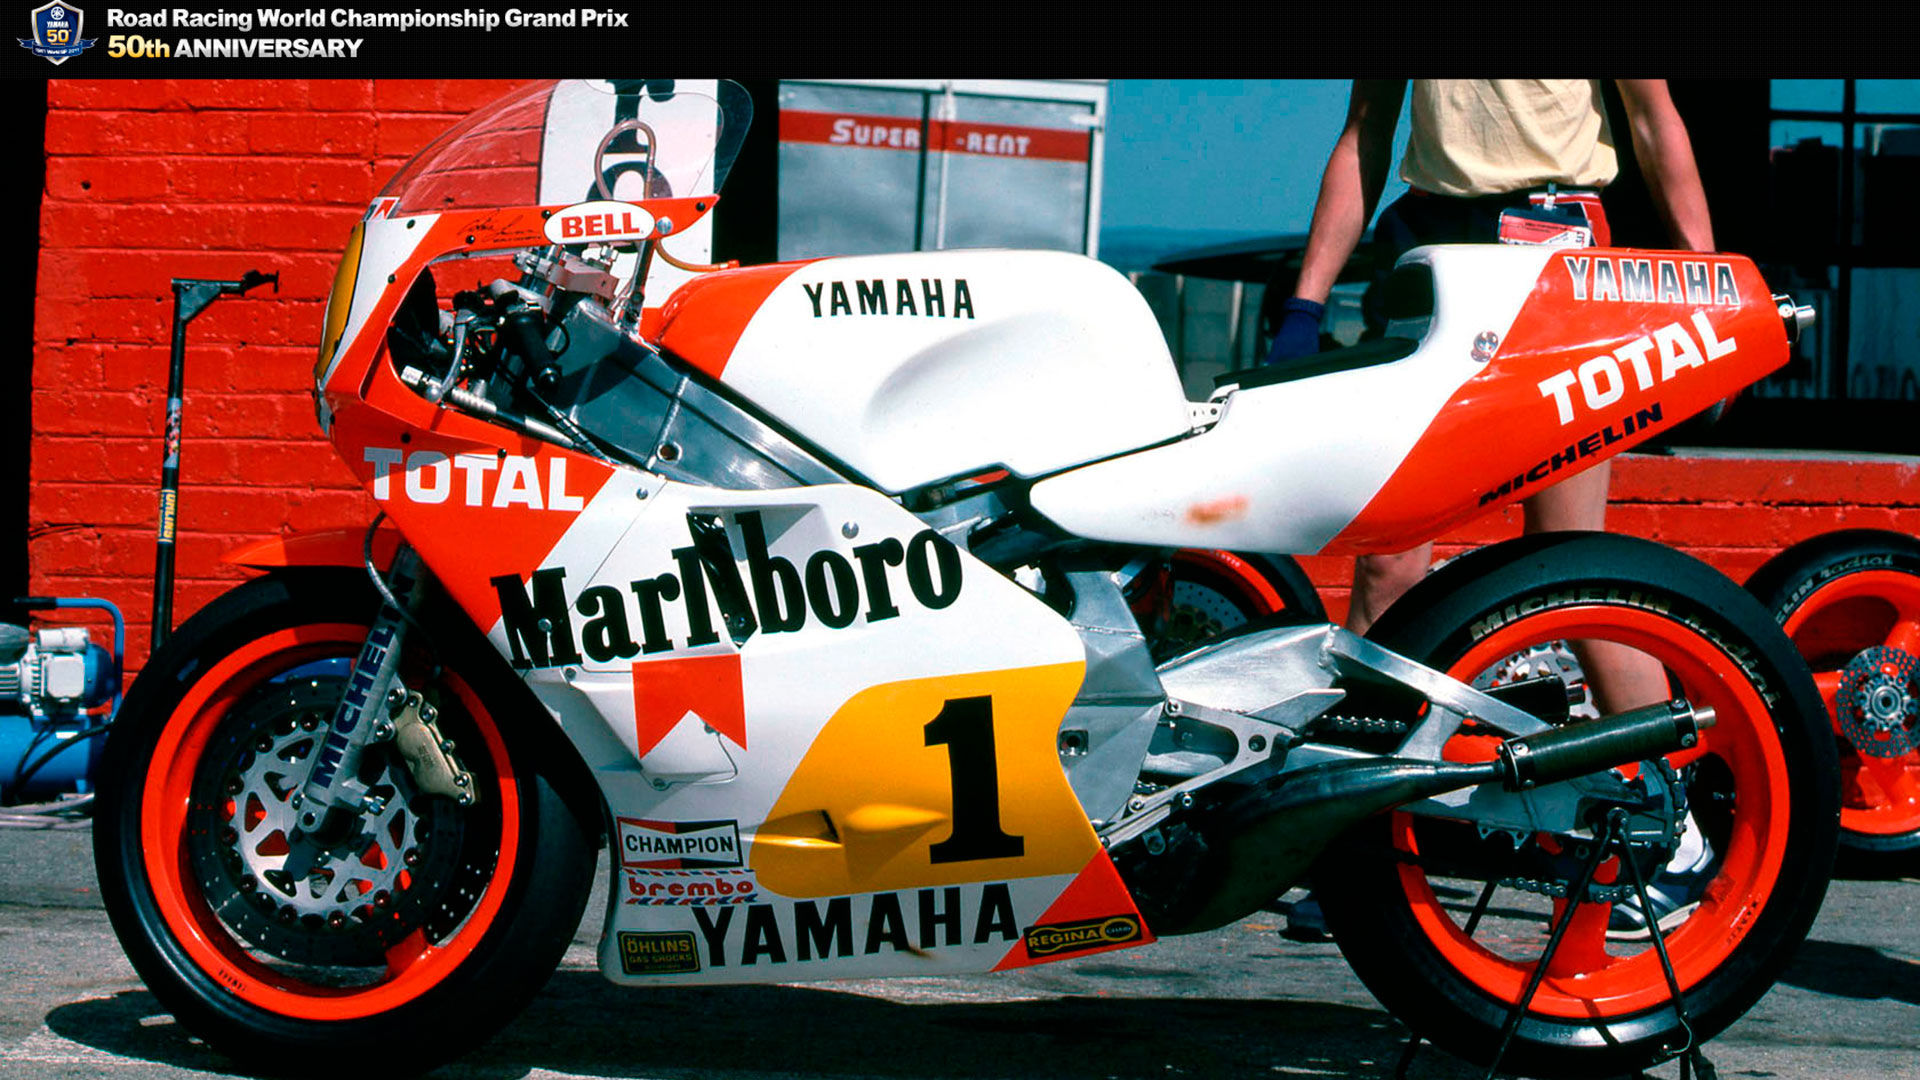 Vídeo: Canepa vuela con la Yamaha YZR500 que hizo campeón a Lawson en 1986